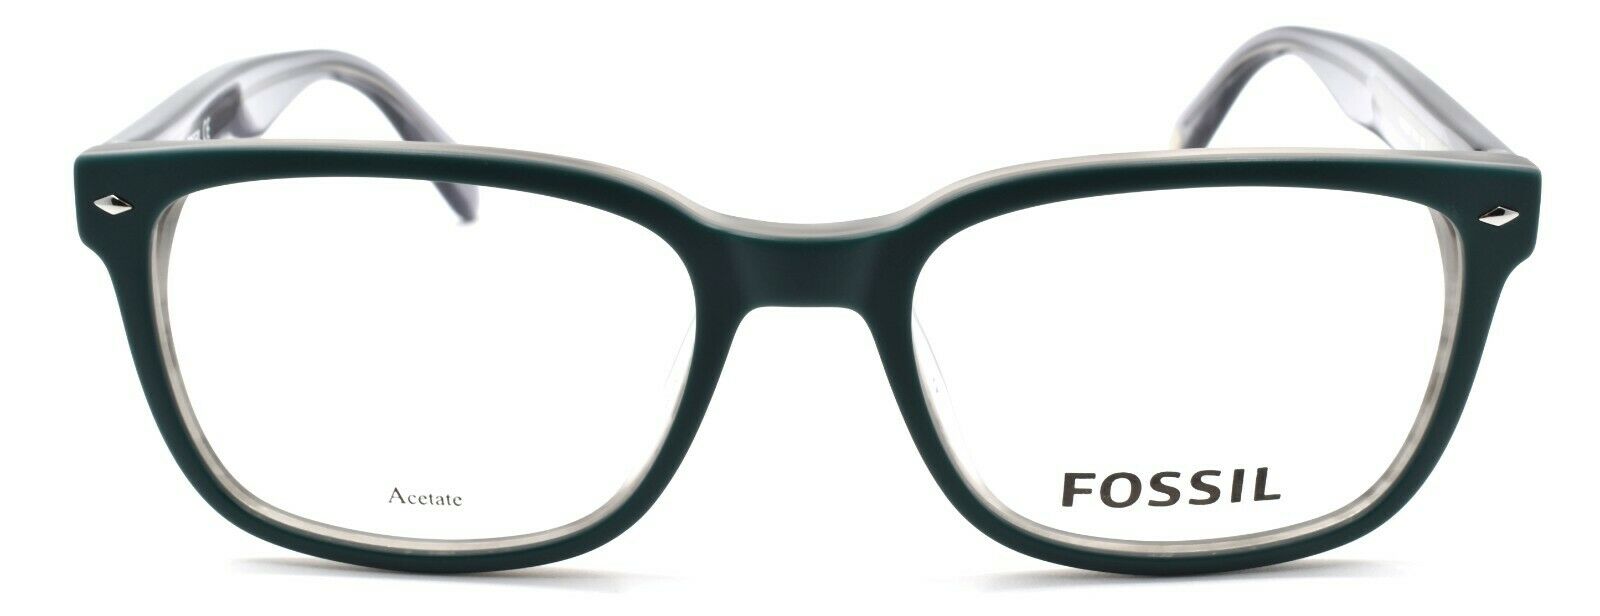 2-Fossil FOS 7037 PYW Men's Eyeglasses Frames 52-19-145 Matte Teal + CASE-716736081694-IKSpecs